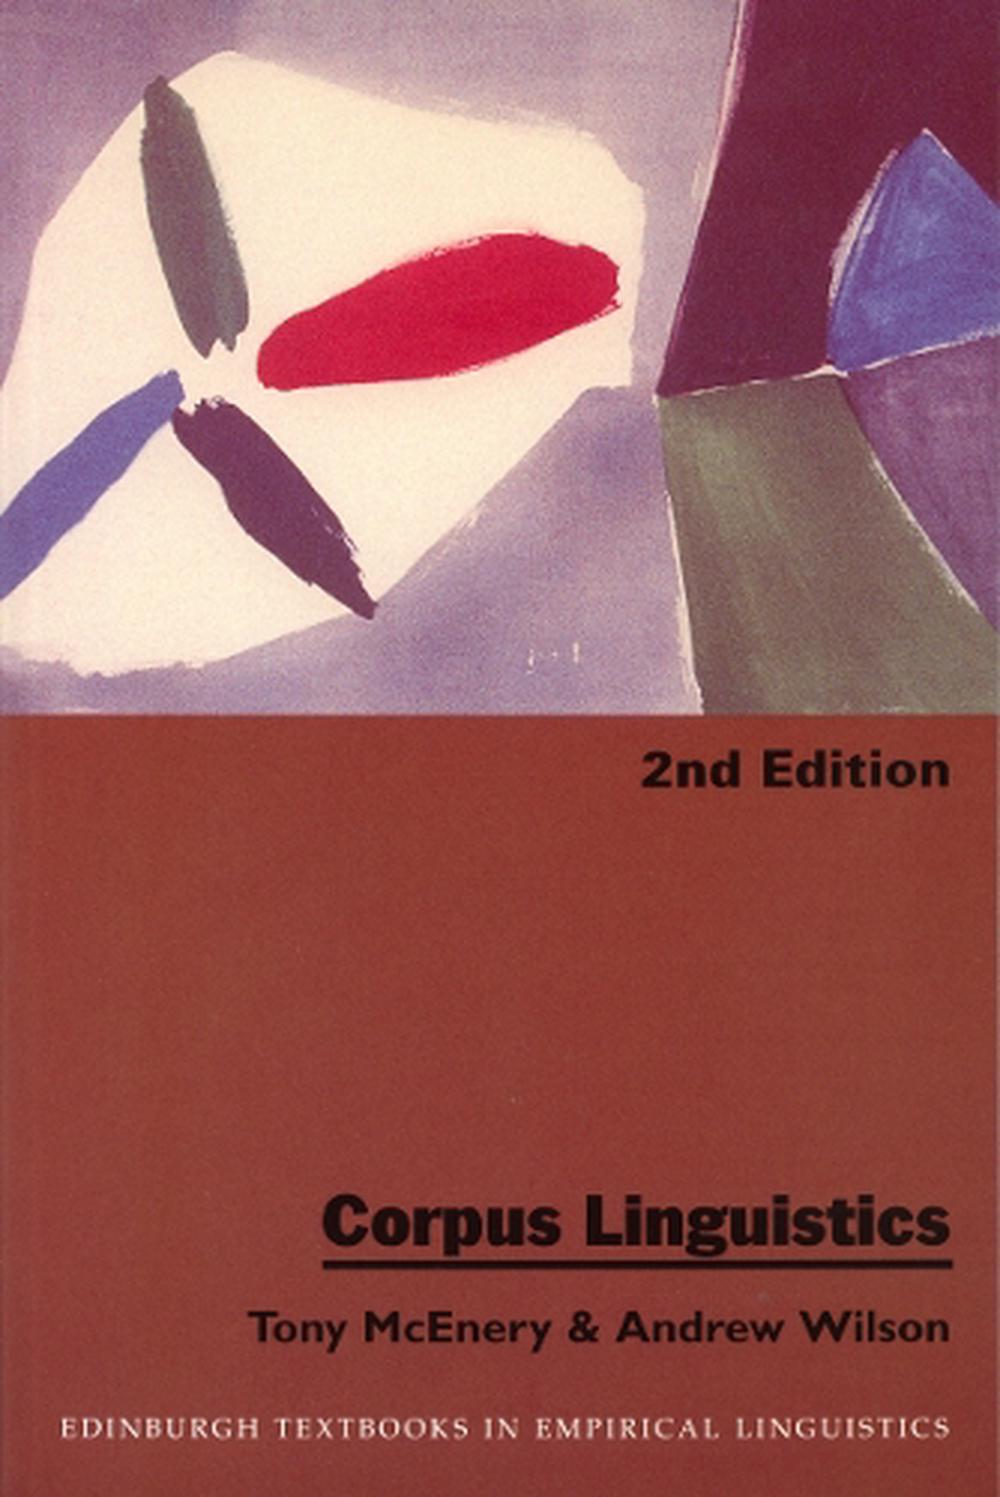 phd in corpus linguistics